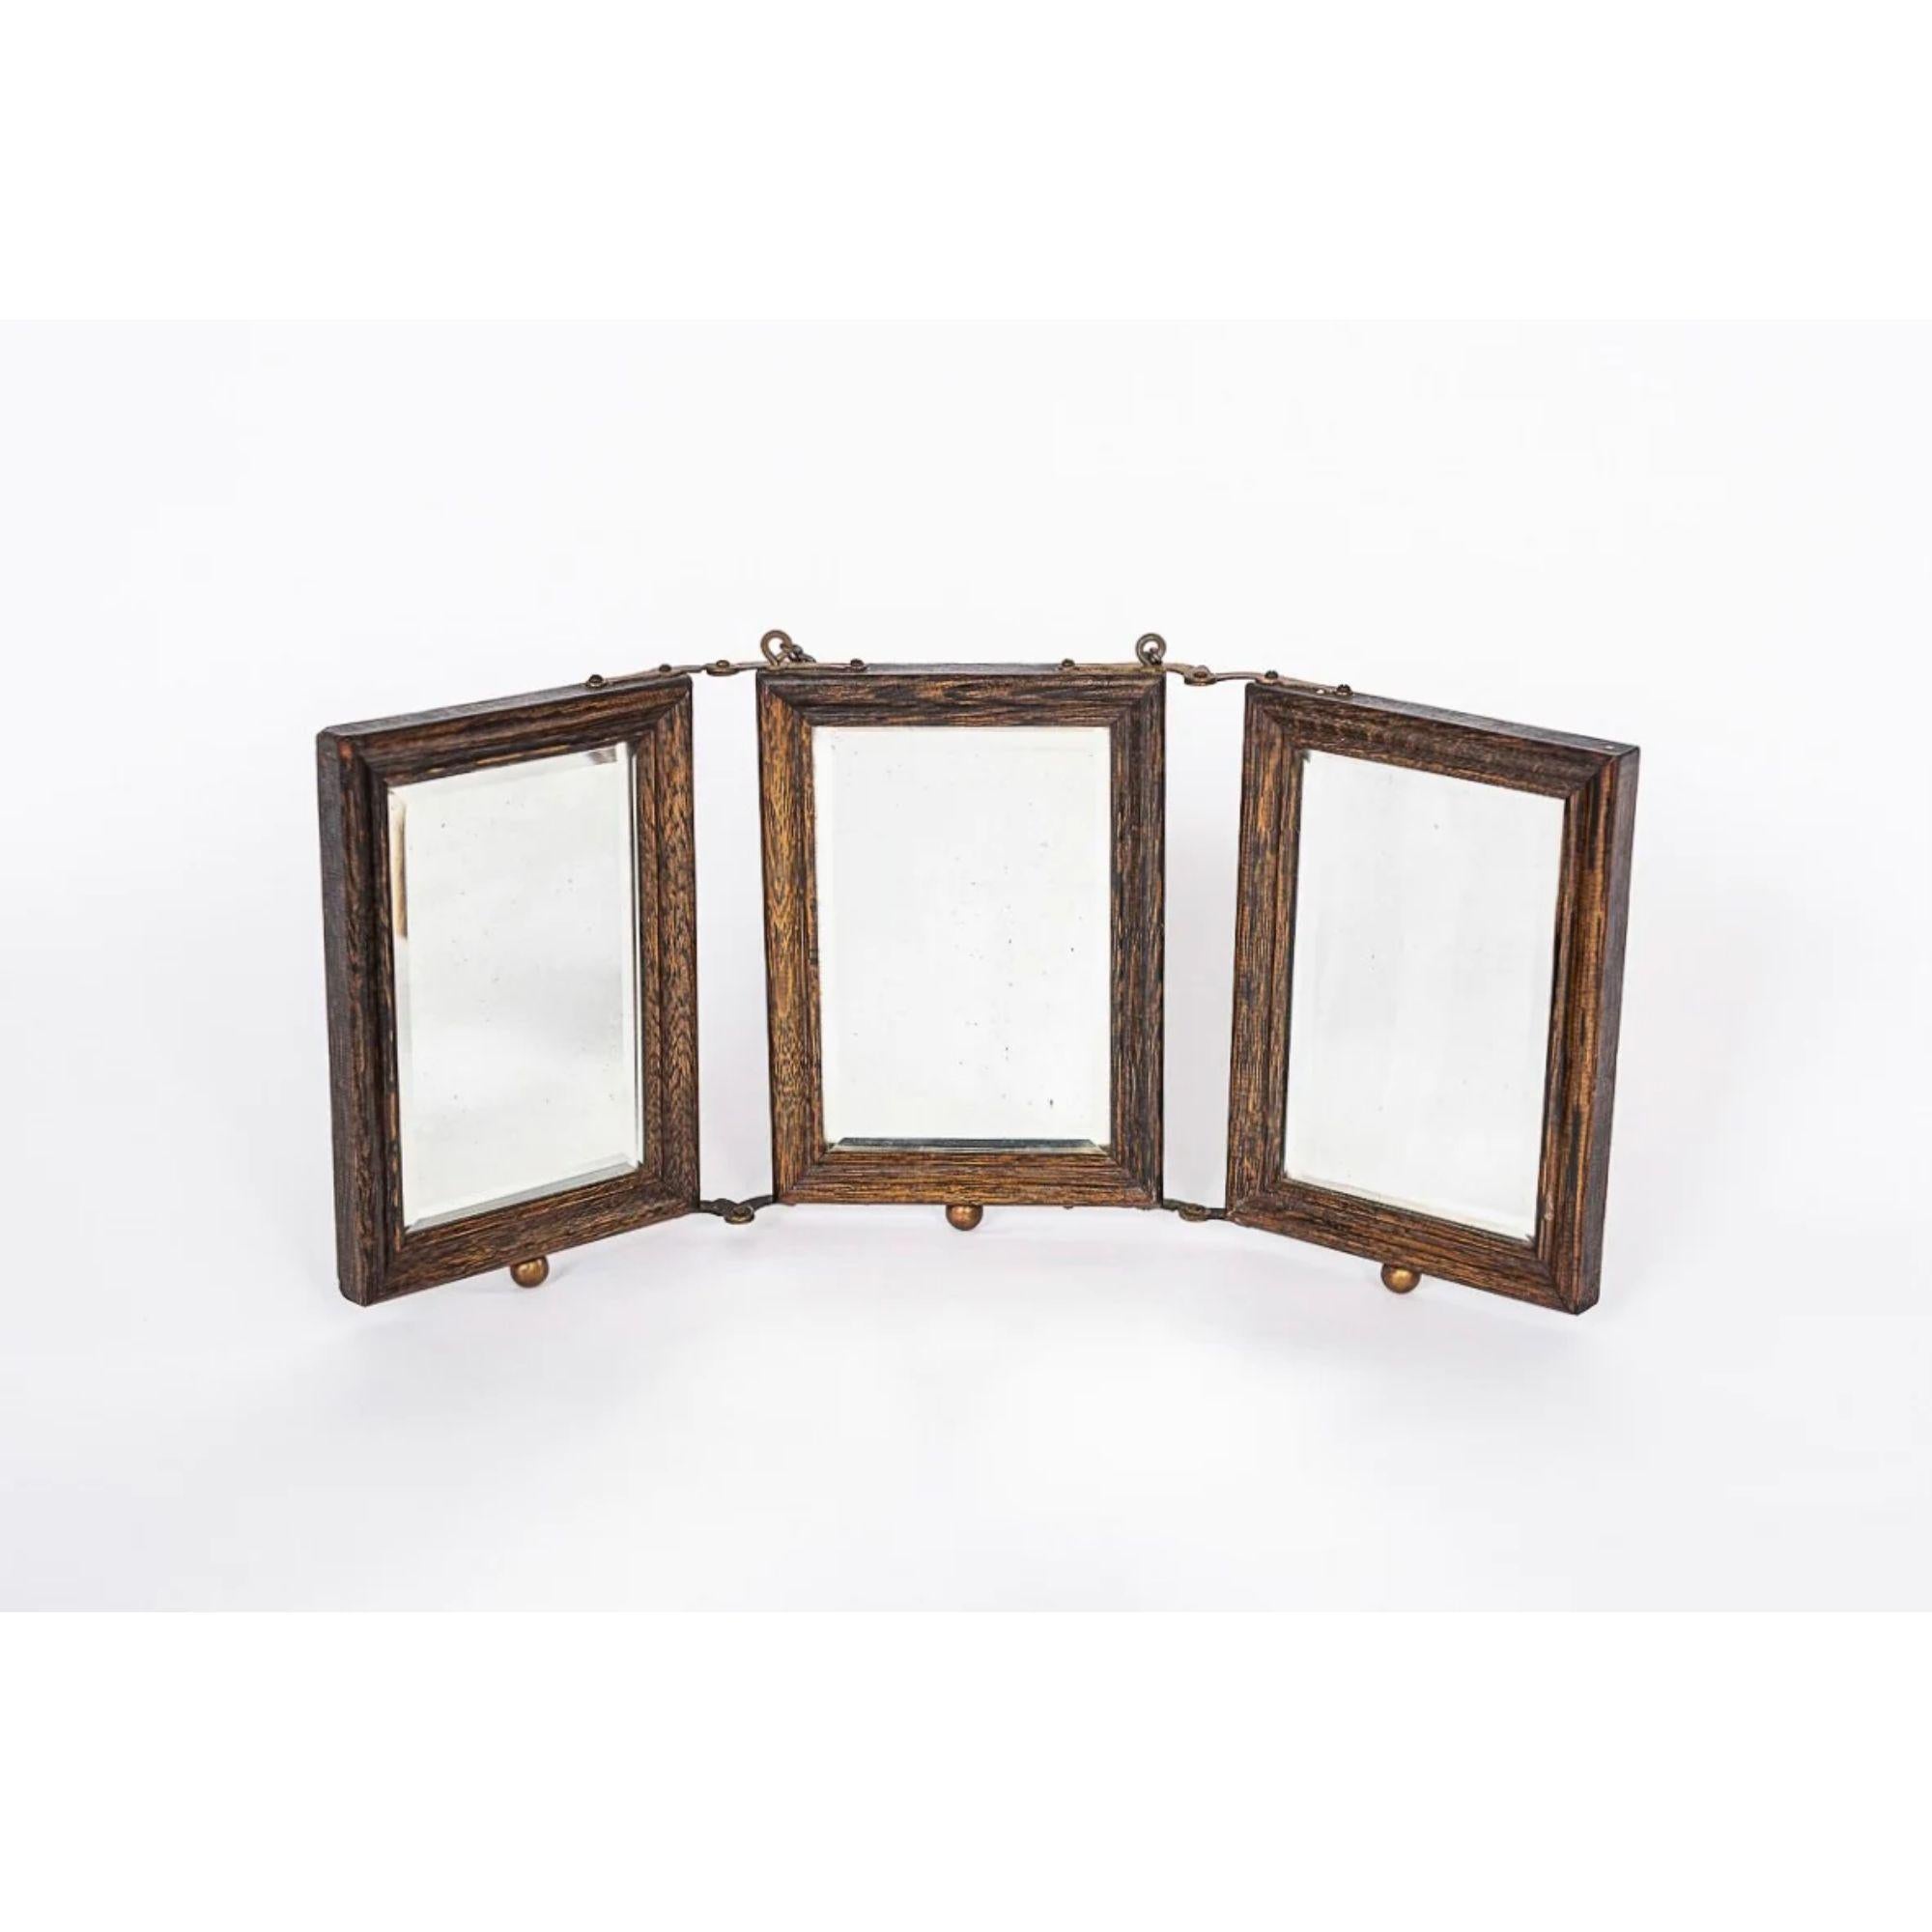 Cet exceptionnel miroir de voyage ou de rasage de barbier victorien, datant d'environ 1910, comporte trois miroirs biseautés placés dans un magnifique cadre en bois de chêne avec des ornements industriels en laiton gaufré et des charnières rivetées.